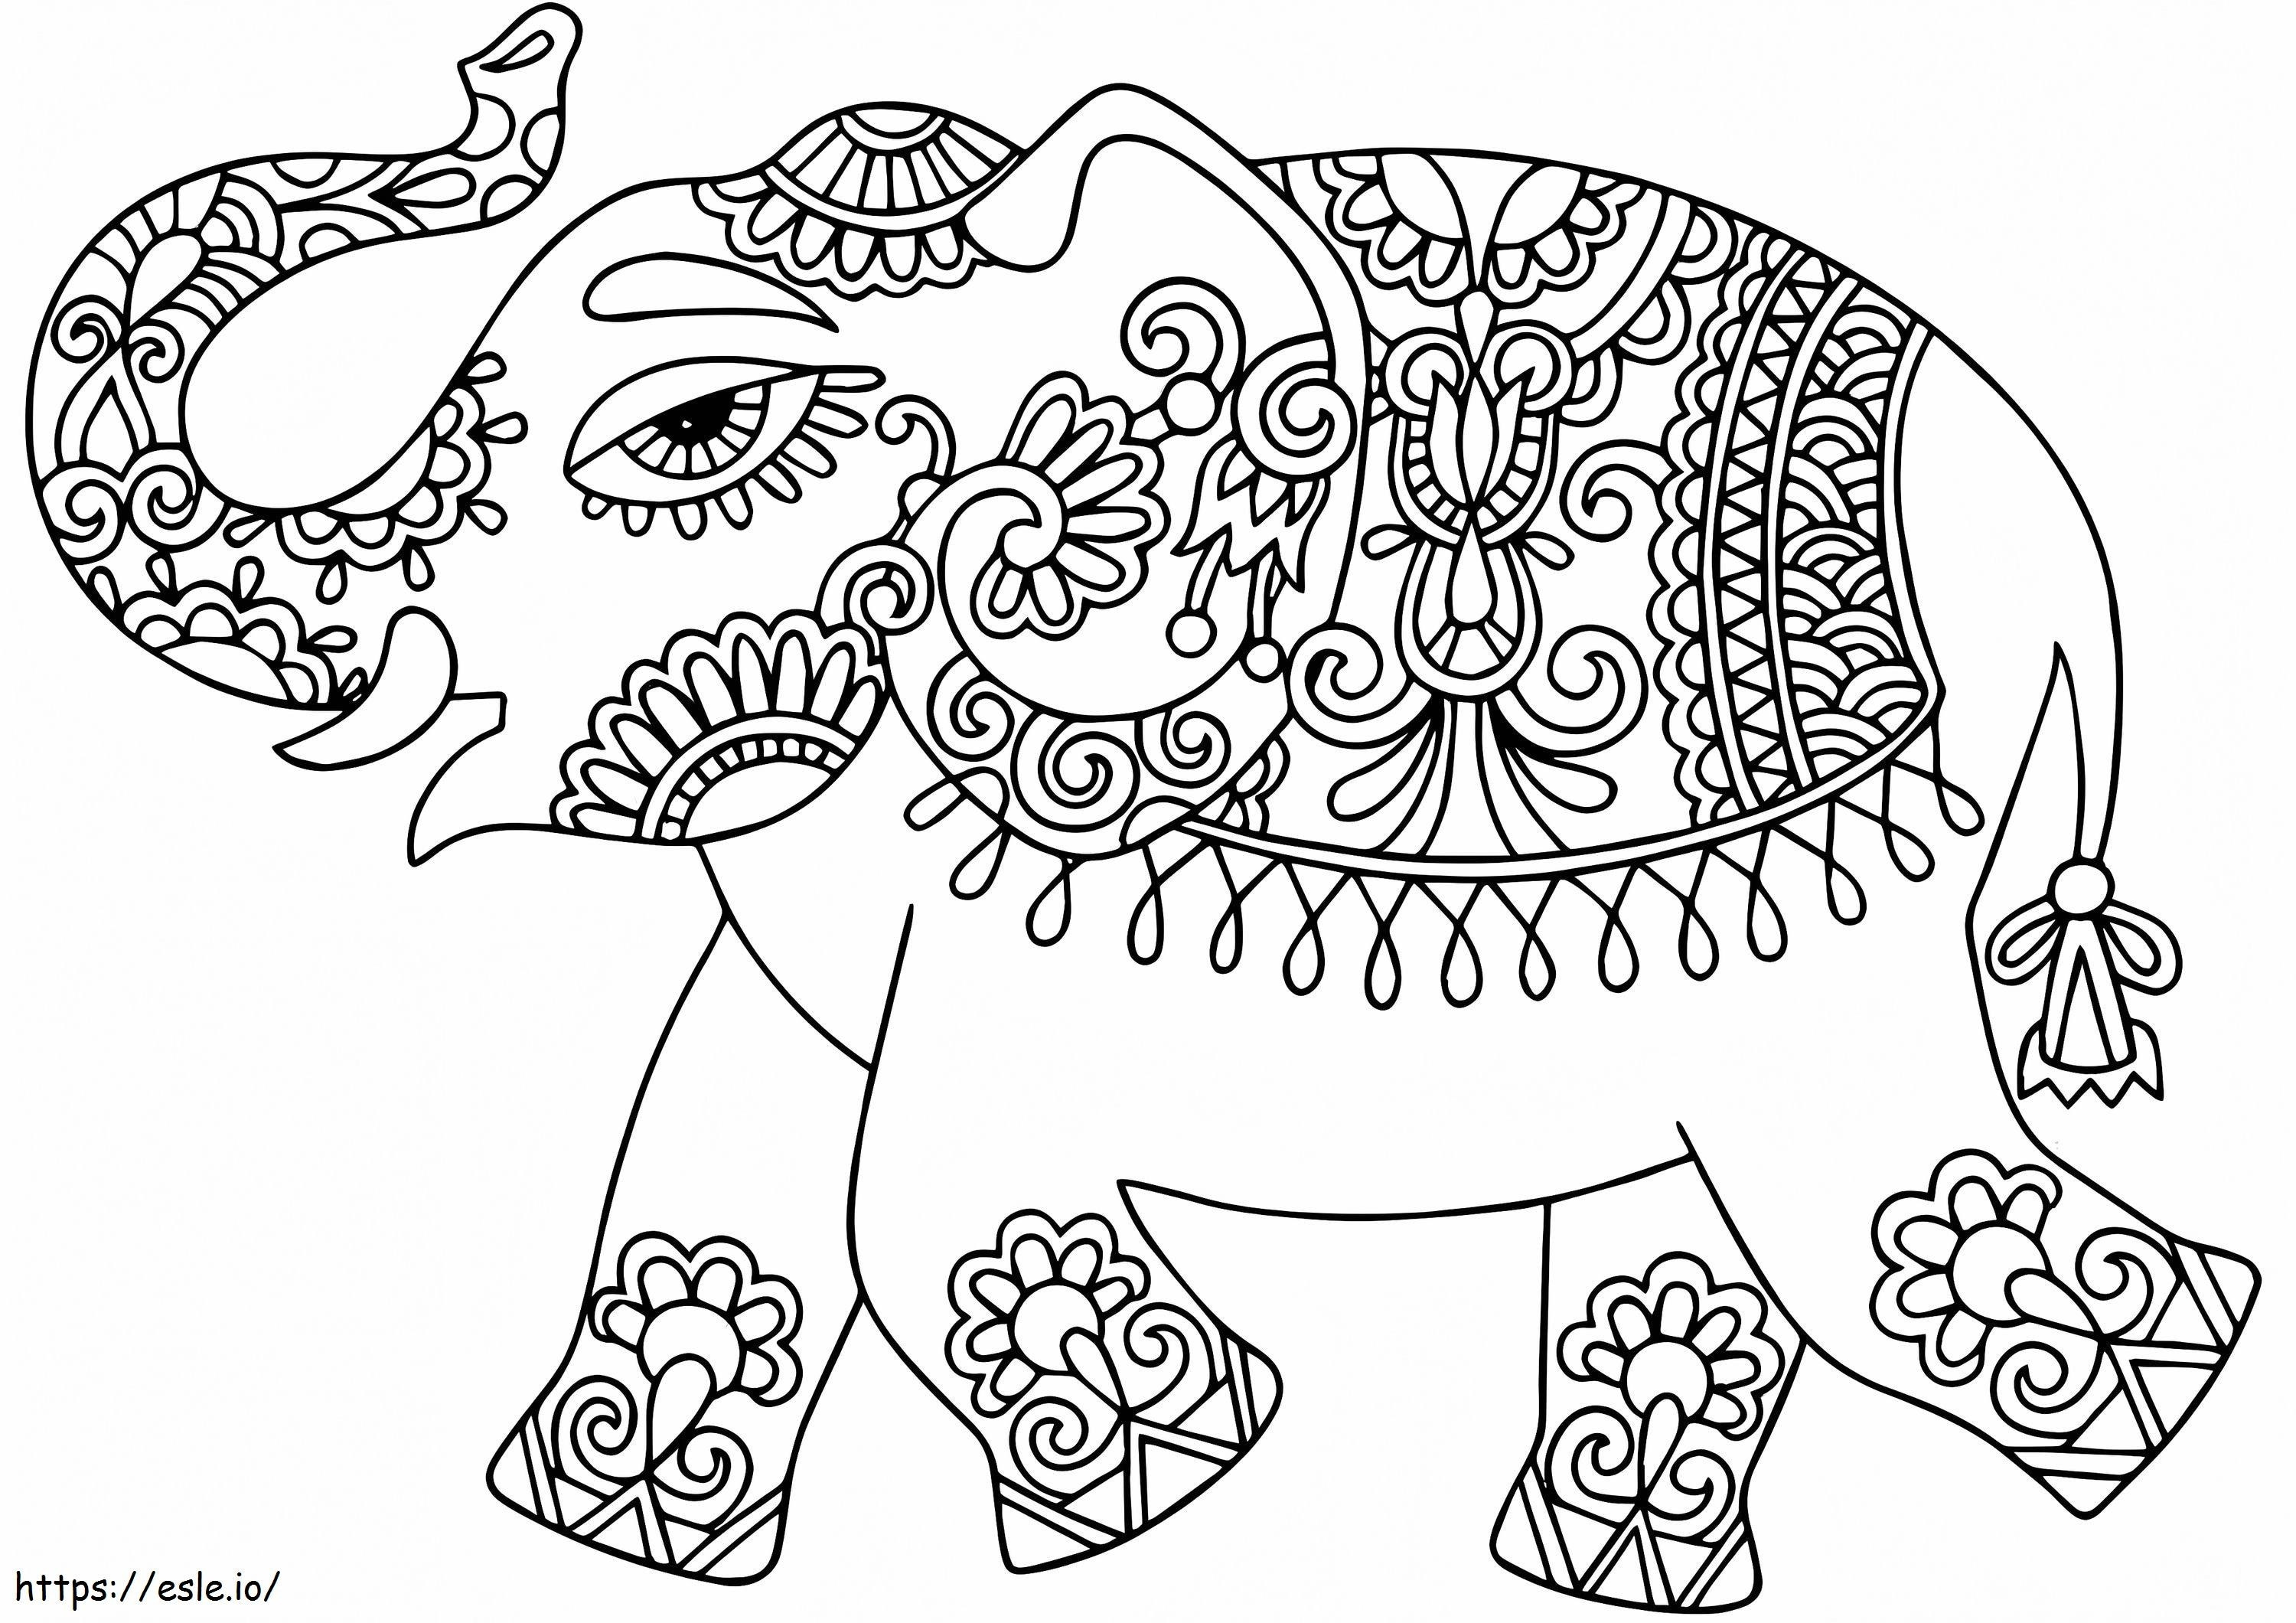 Elefant mit indischen Mustern ausmalbilder